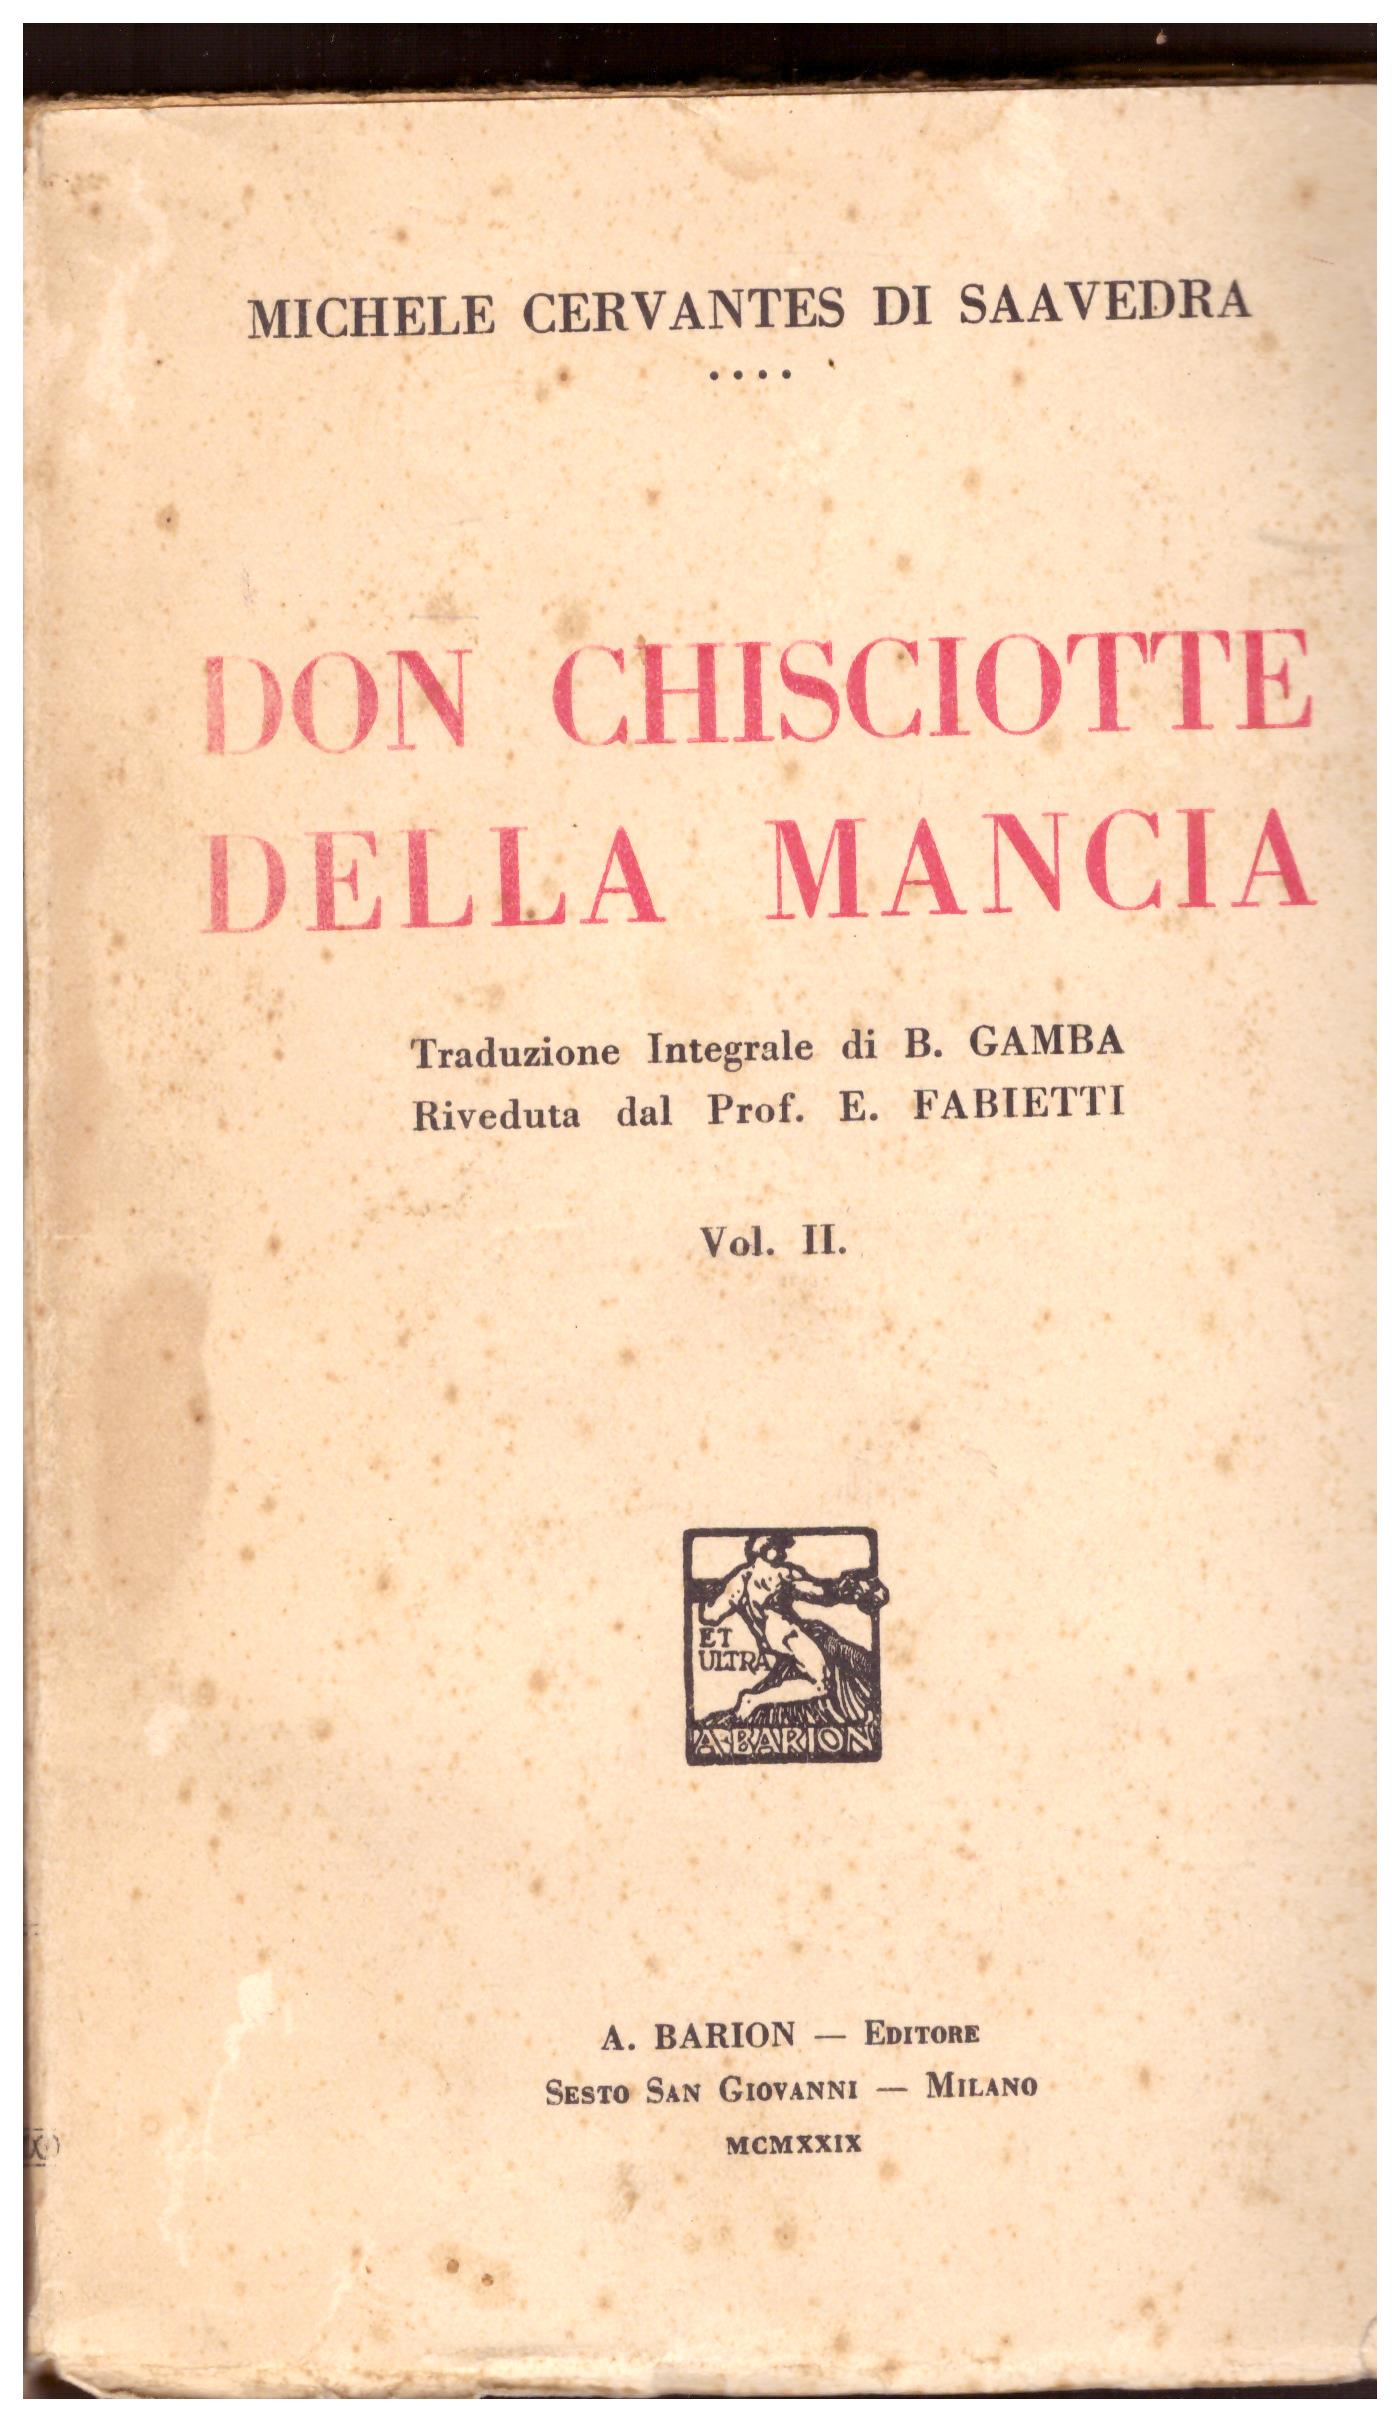 Titolo: Don Chisciotte della Mancia vol. 2 Autore: Michele Cervantes di Saavedra Editore: A. Barion, Sesto San Giovanni MCMXXXIX